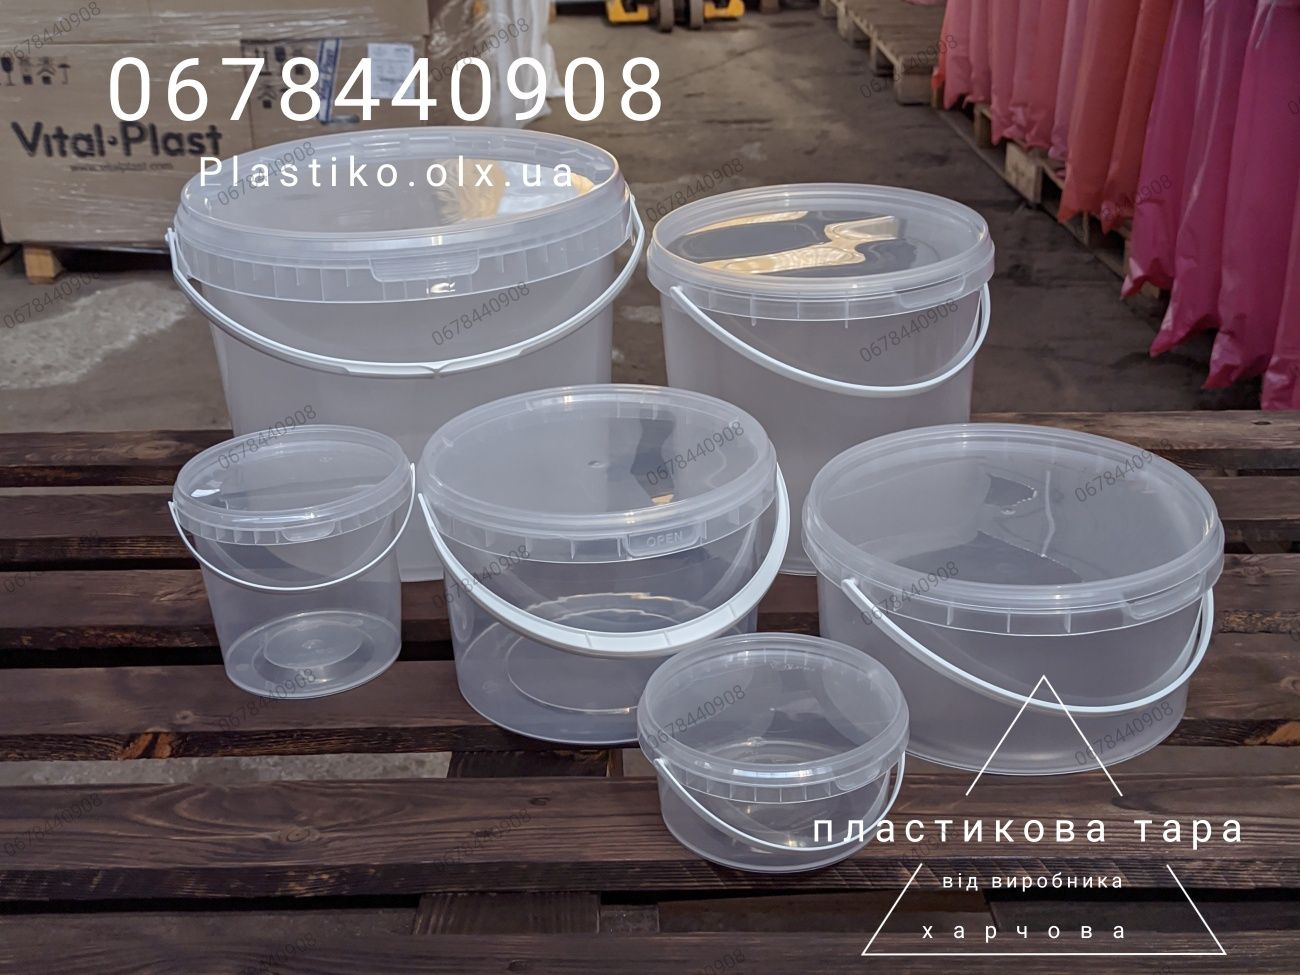 Харчова пластикова тара: відро, судок, ємність, банка, контейнер